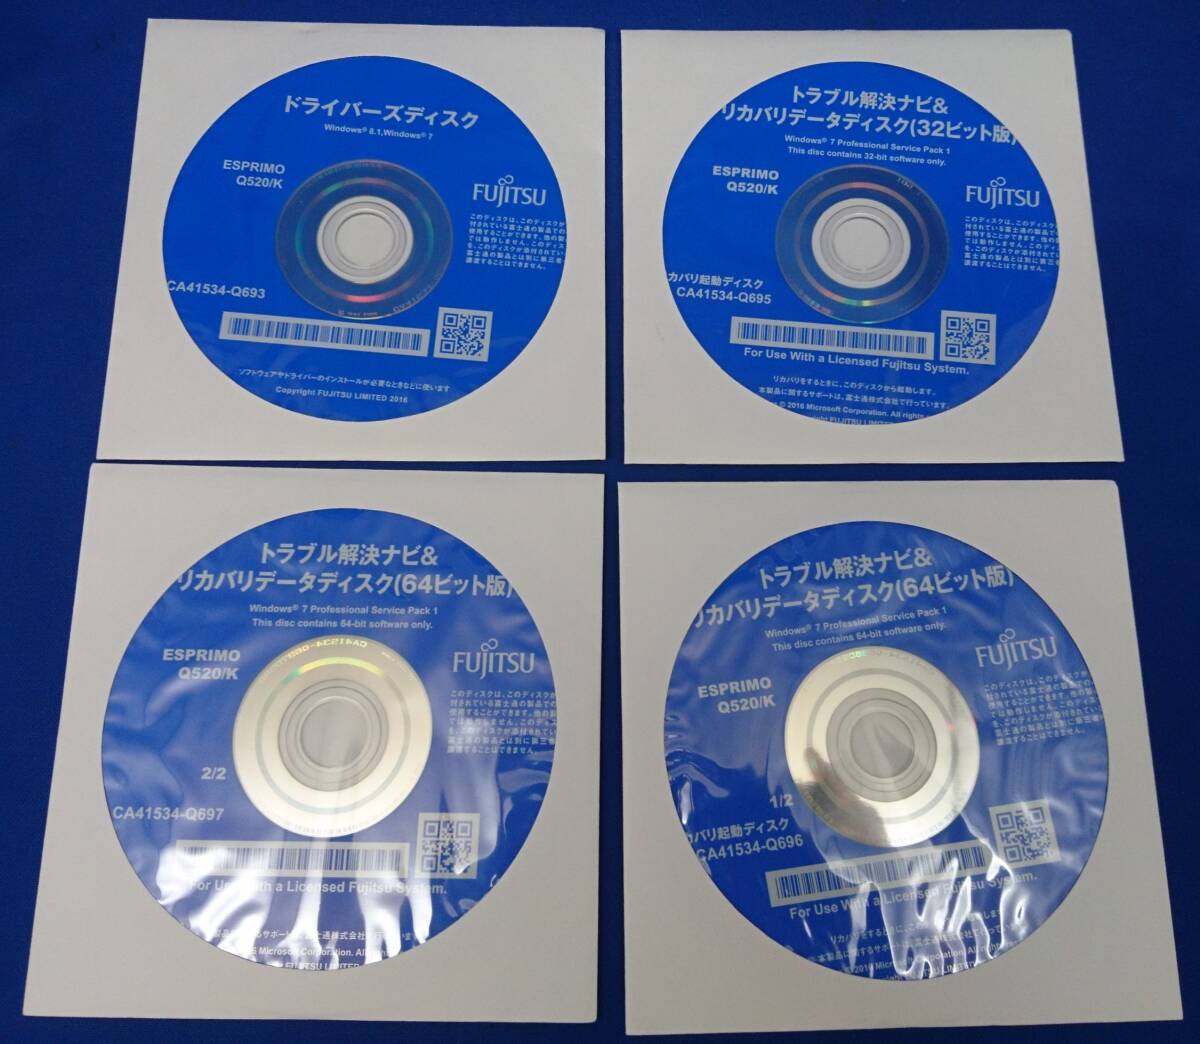 [FUJITSU ESPRIMO Q520/K] для восстановление диск Windows7 64bit+32bit 4 листов комплект 